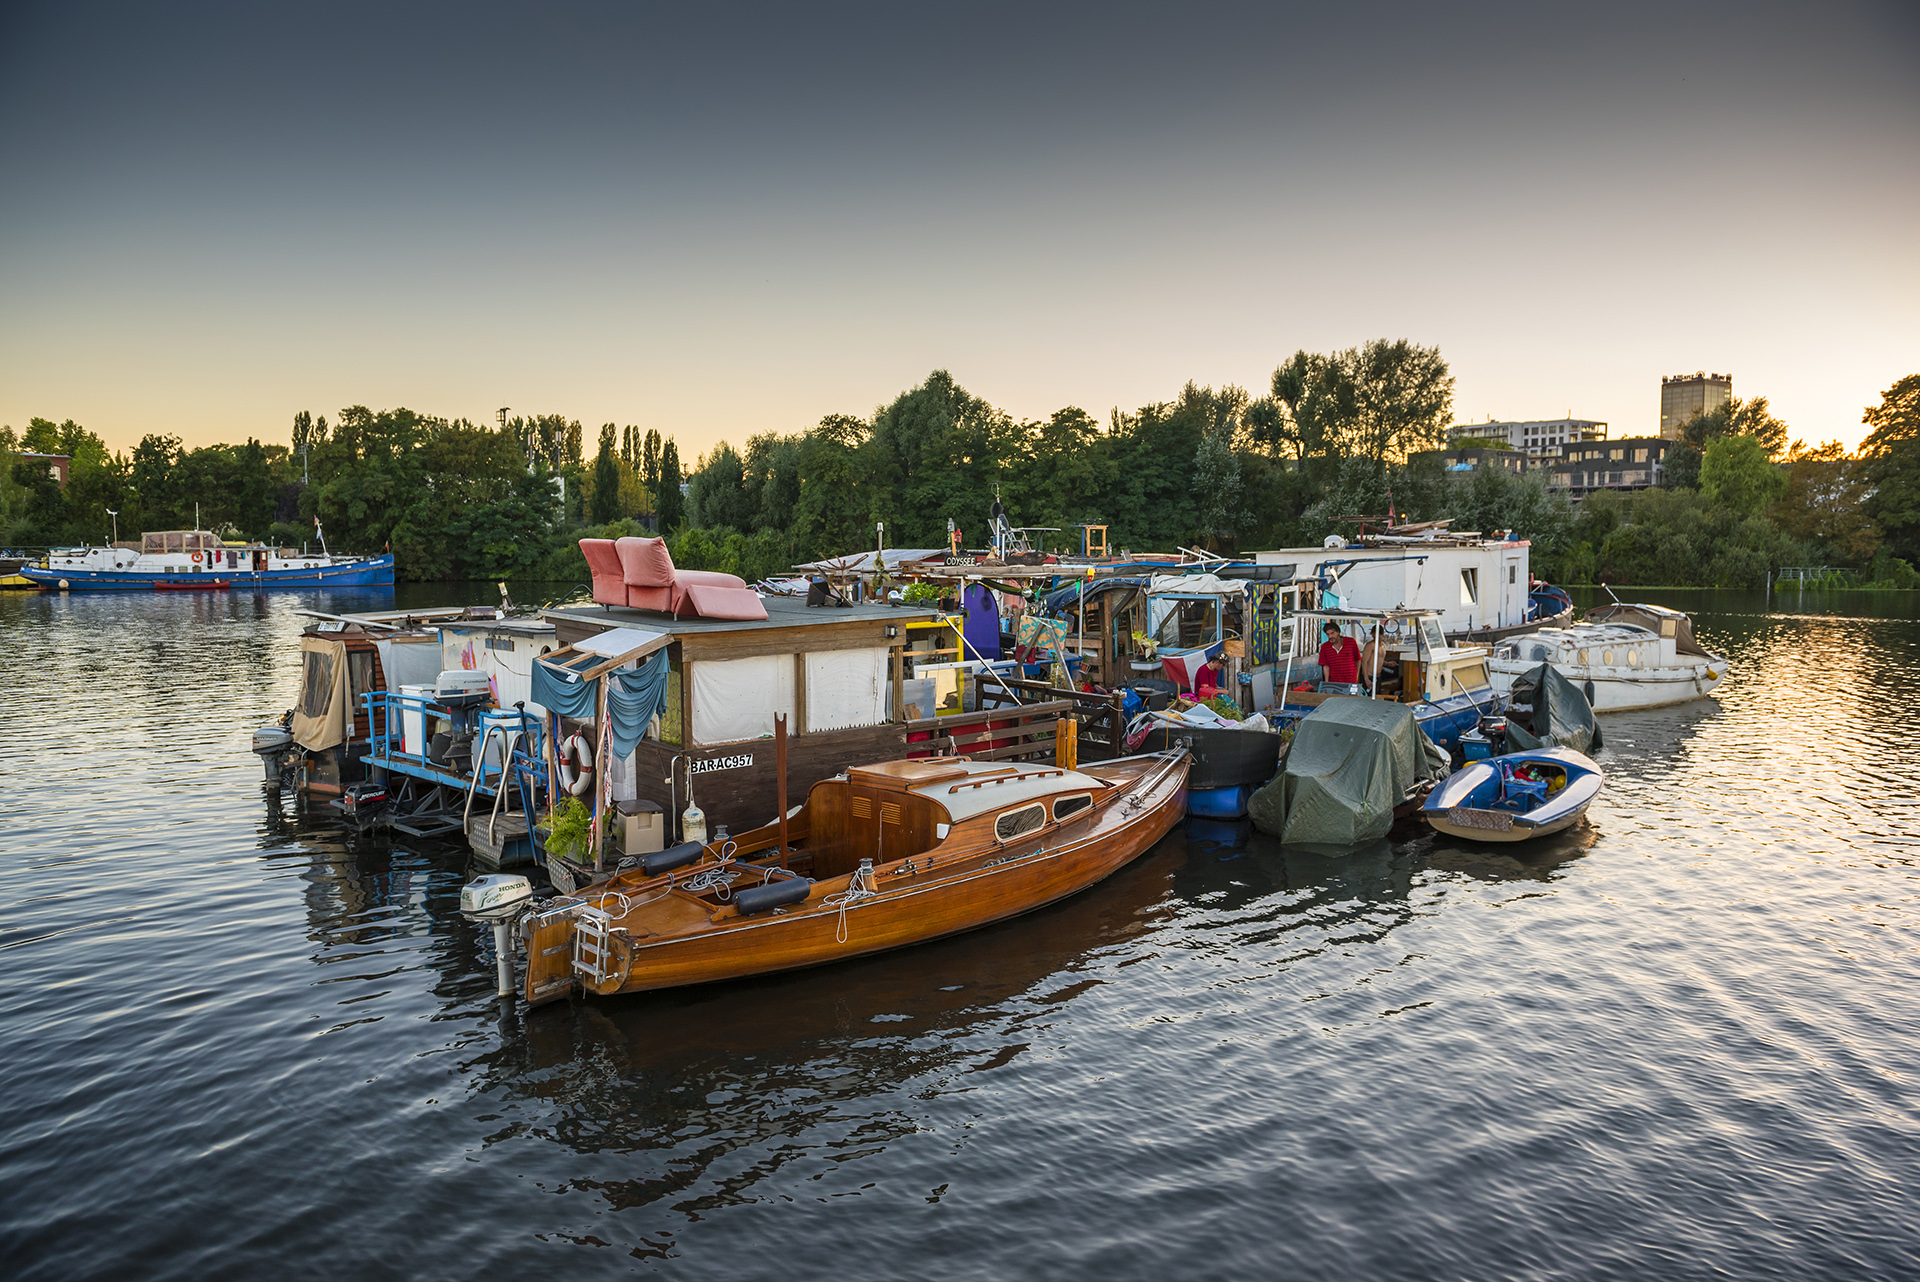 Ankerverbund, Ansammlung ankernder Boote, auf dem Rummelsburger See. Die schwimmende künstliche Insel trägt den Namen "Lummerland". Berlin, 30.08.2016